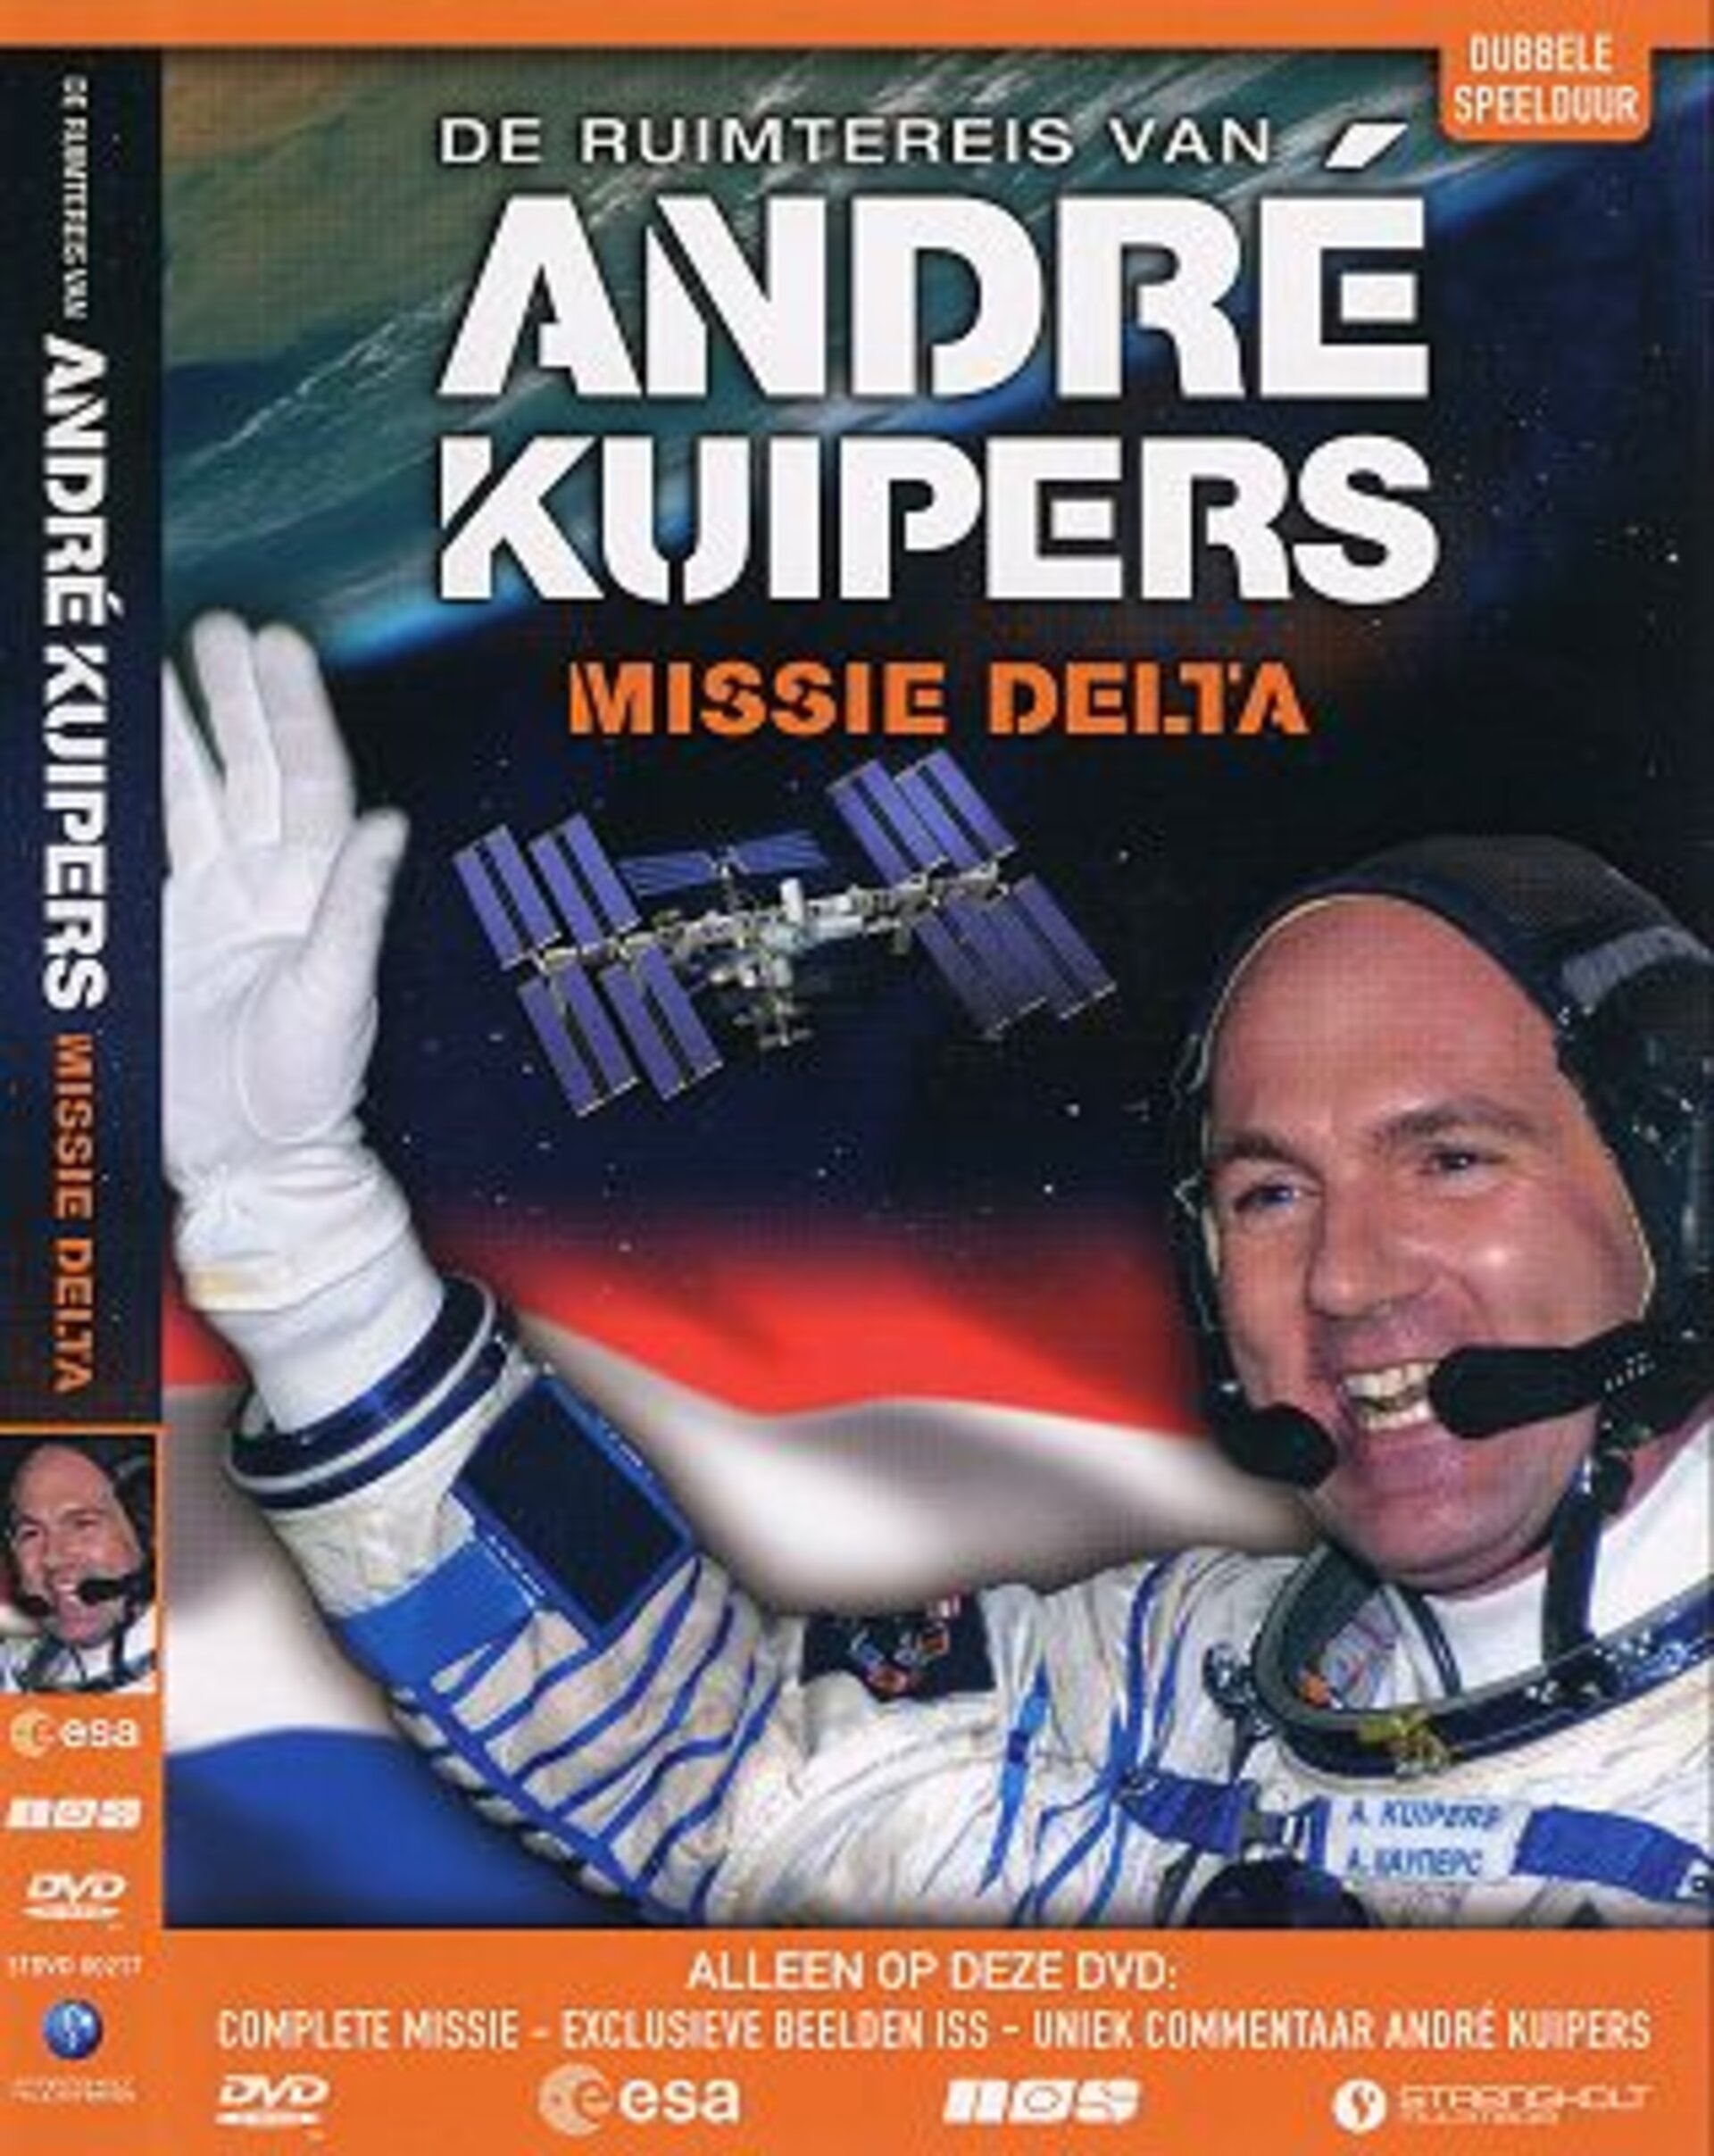 De ruimtereis van André Kuipers, Missie DELTA